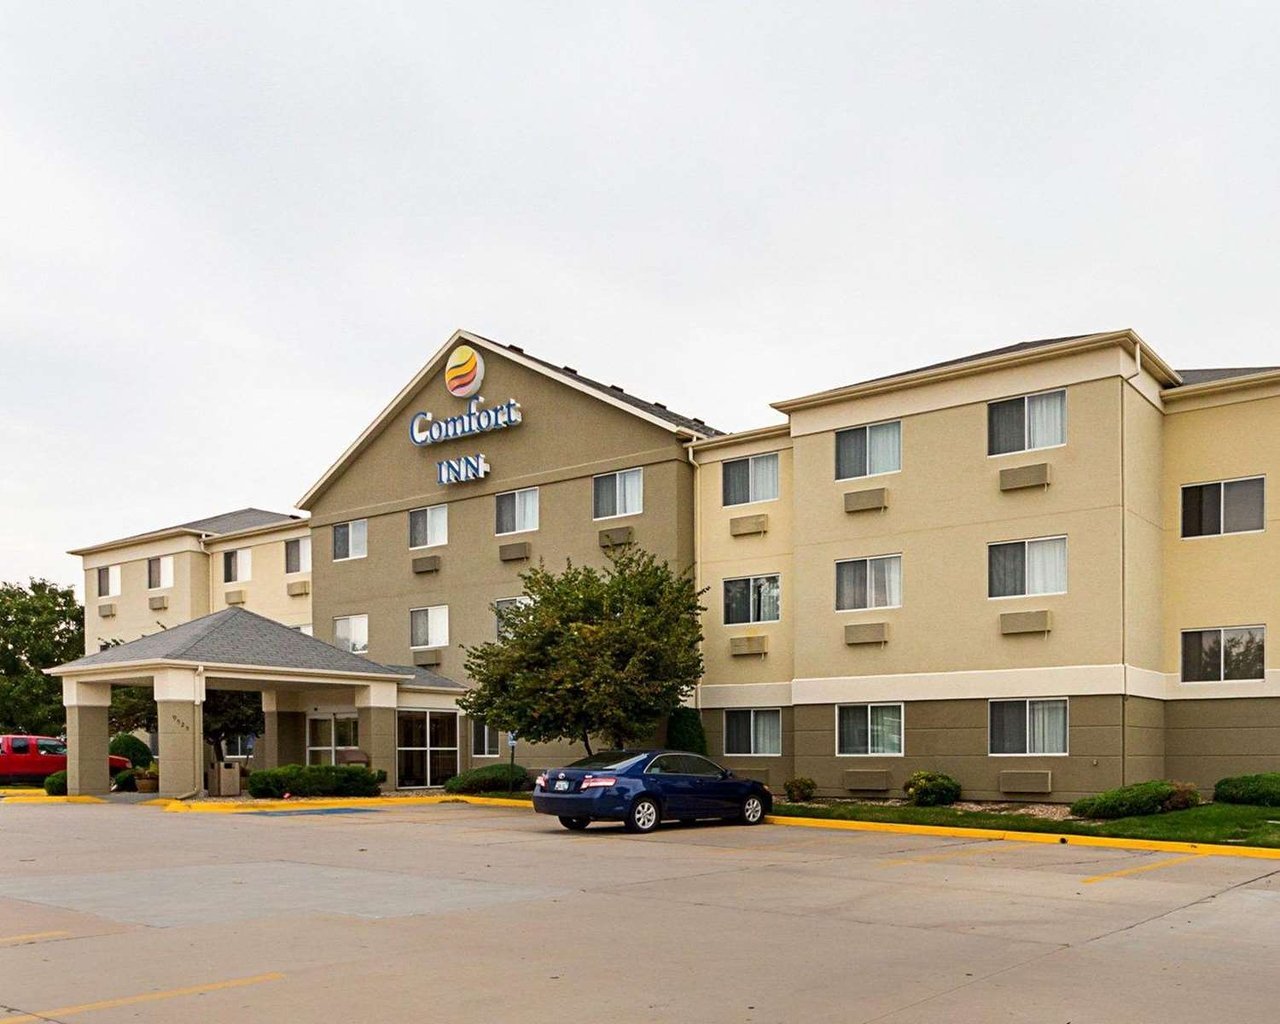 Photo of Comfort Inn East Wichita, Wichita, KS